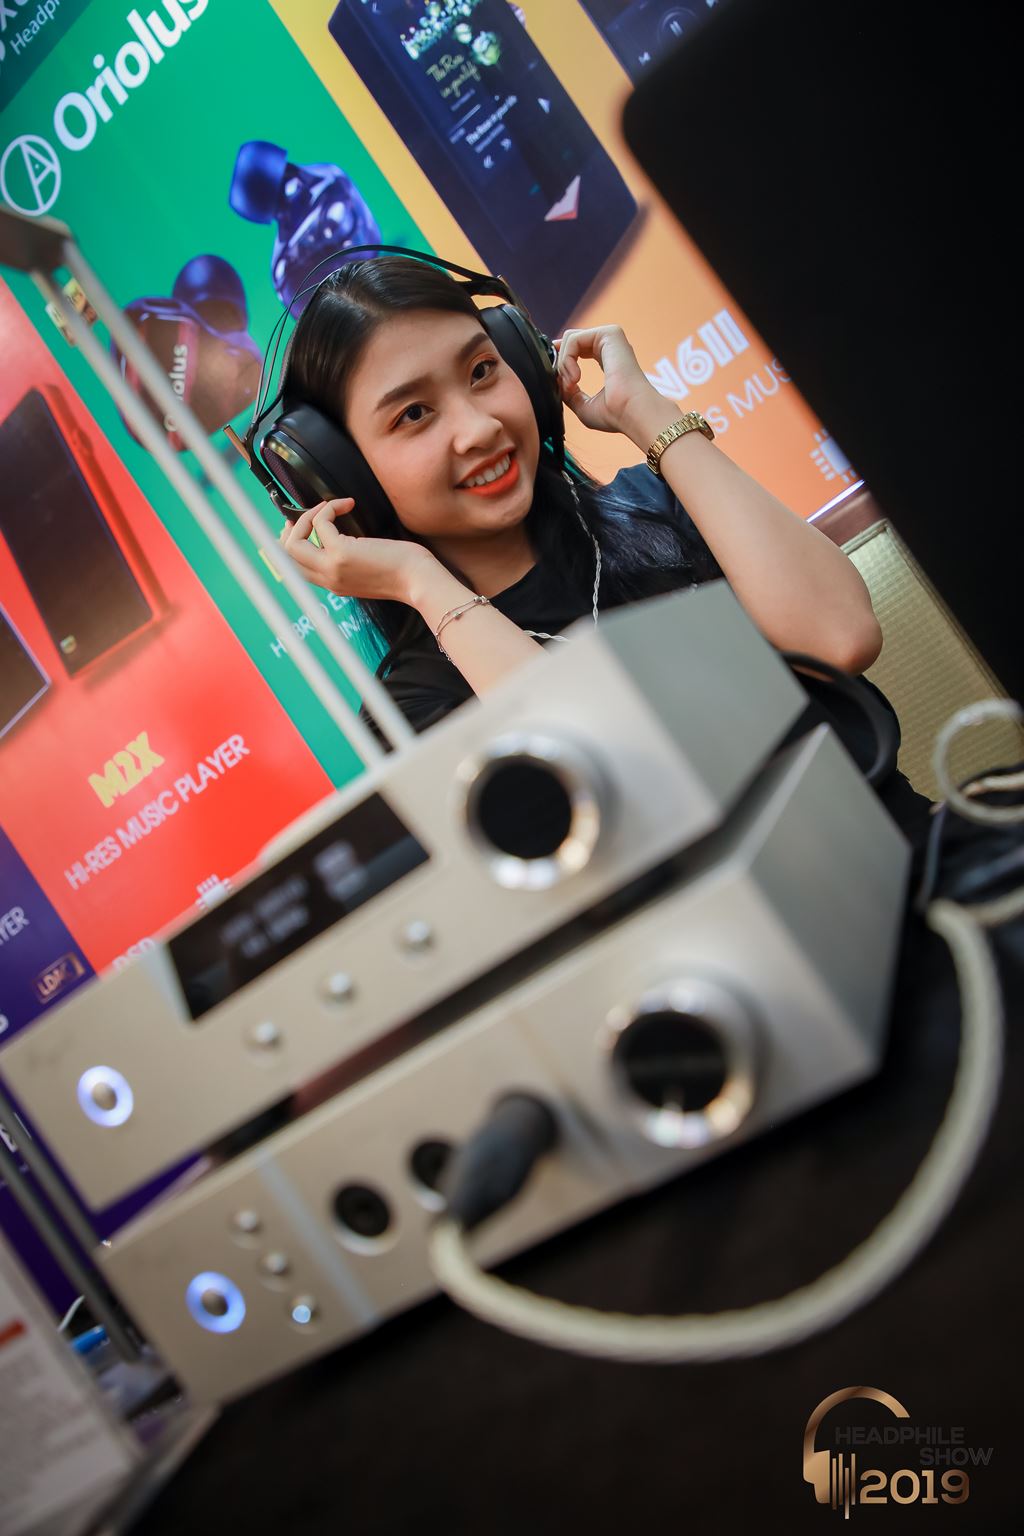 Headphile Show 2019: tai nghe, thiết bị di động và bóng hồng ảnh 10